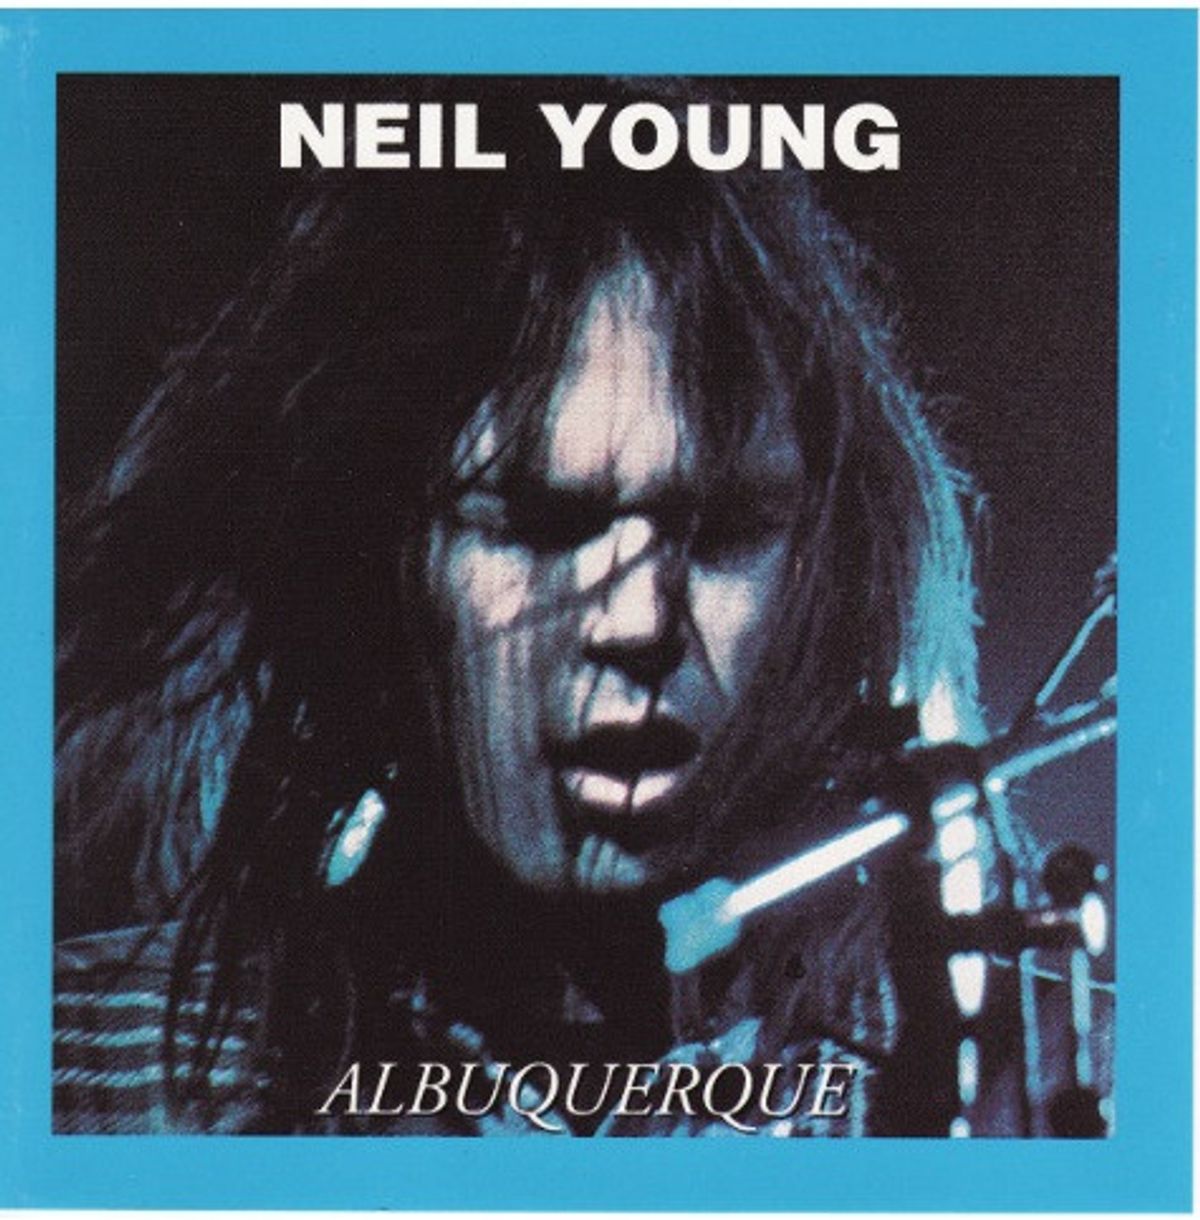 #Steden - Neil Young - Albuquerque (1975)